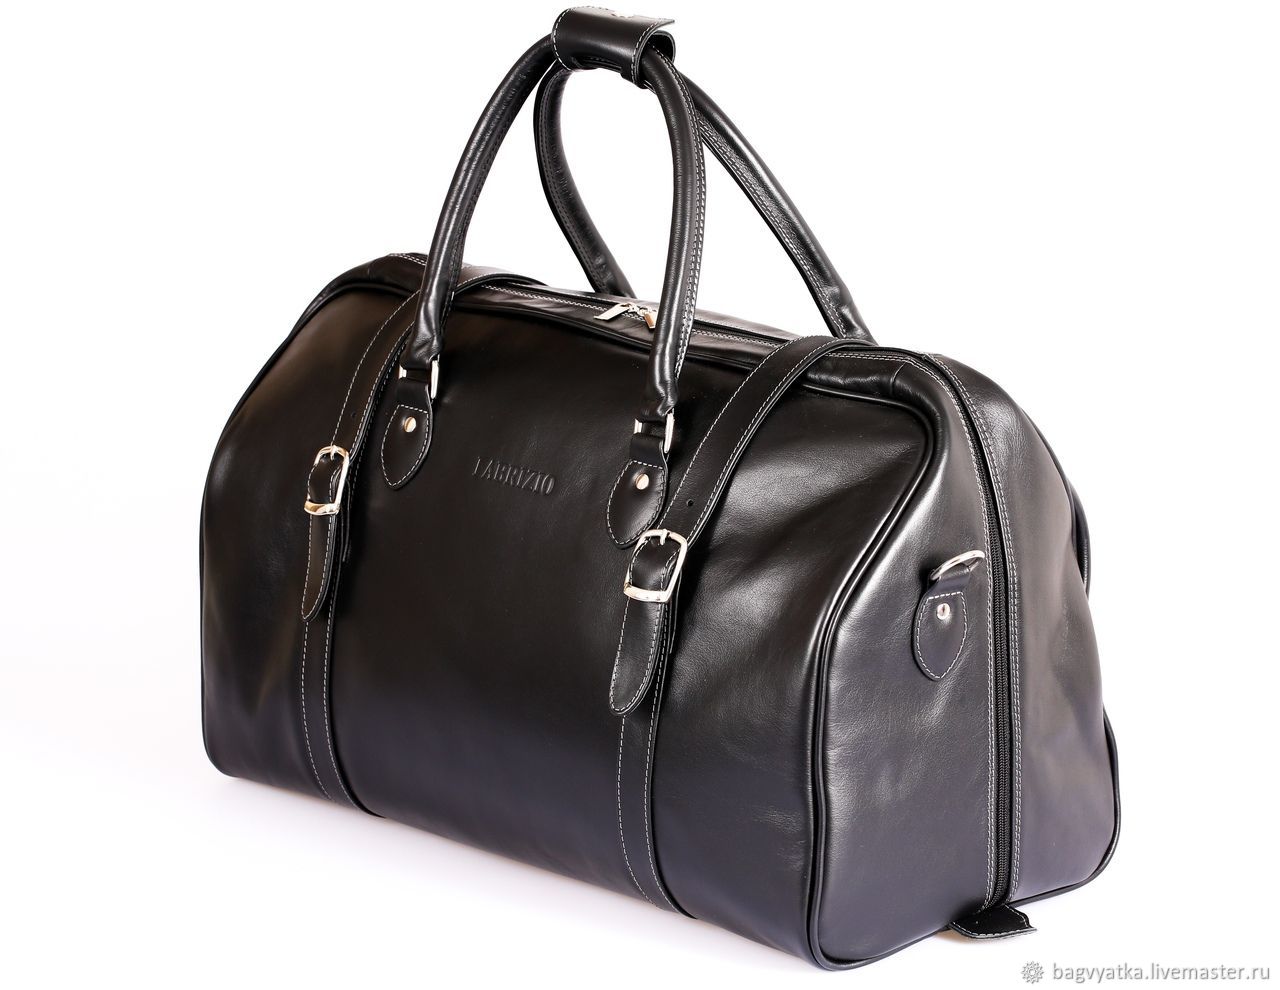 Дорожная сумка Fabrizio 'Venezia 17', дорожный саквояж, чемодан